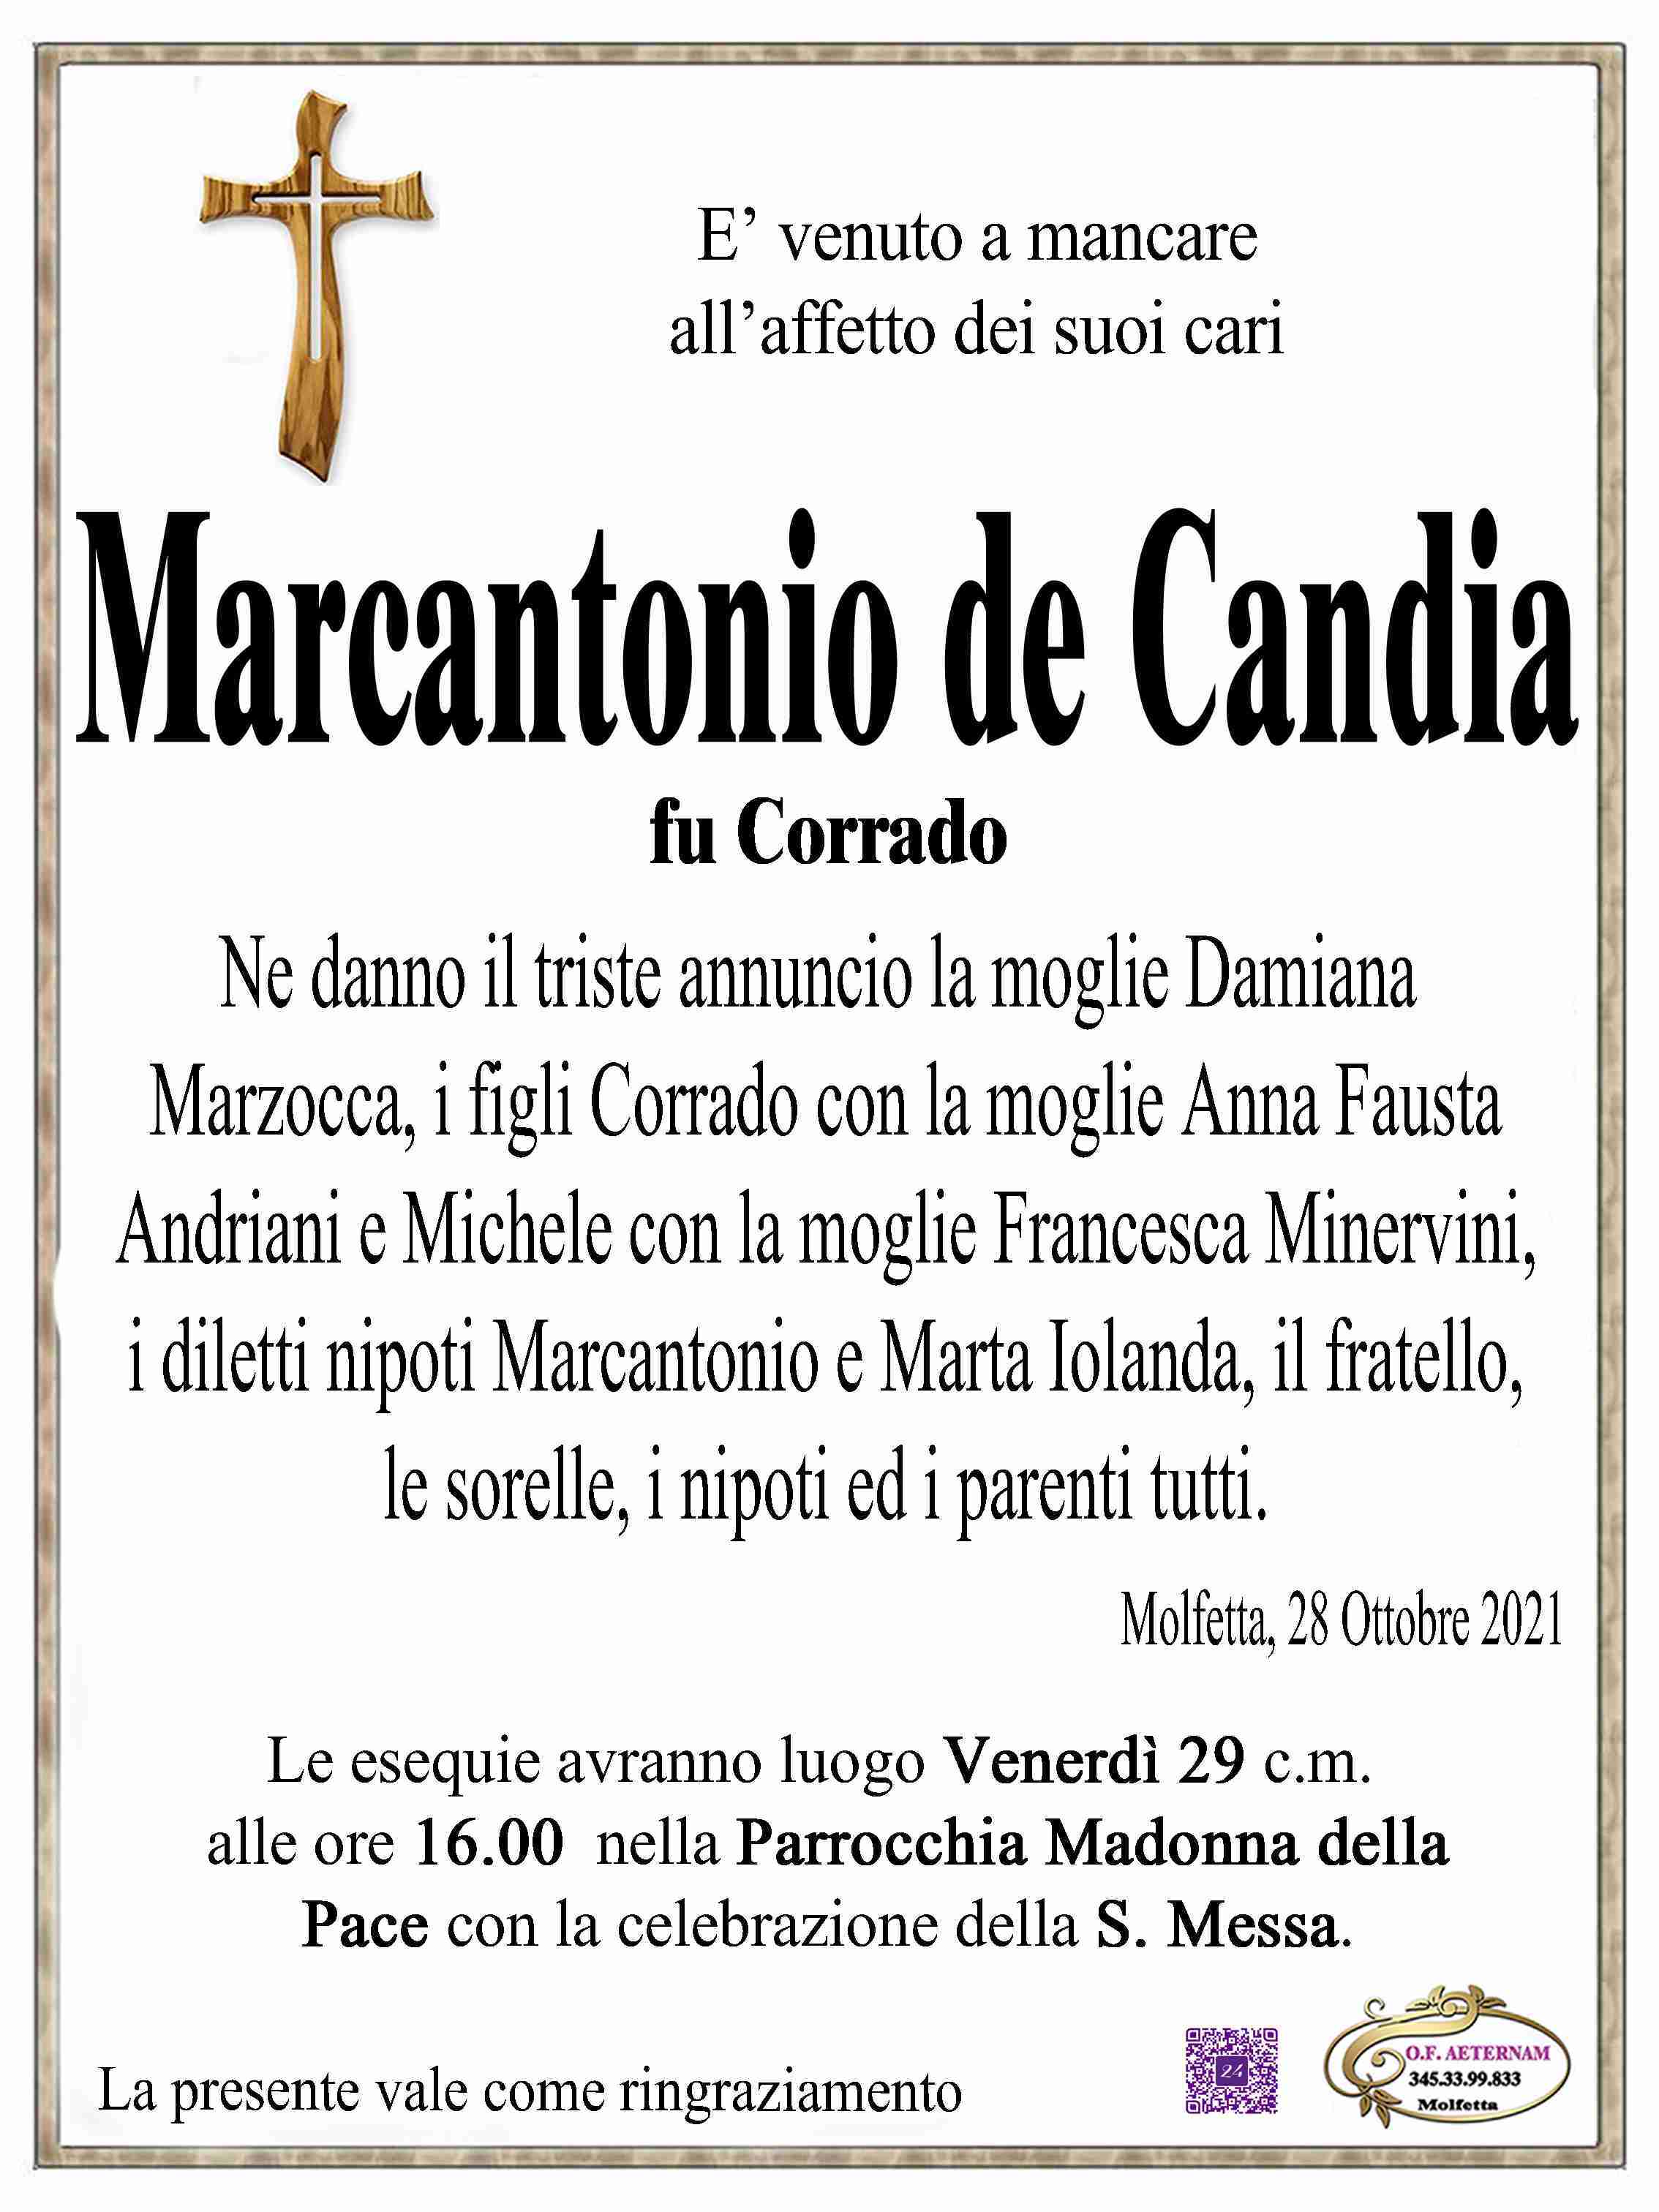 Marcantonio de Candia